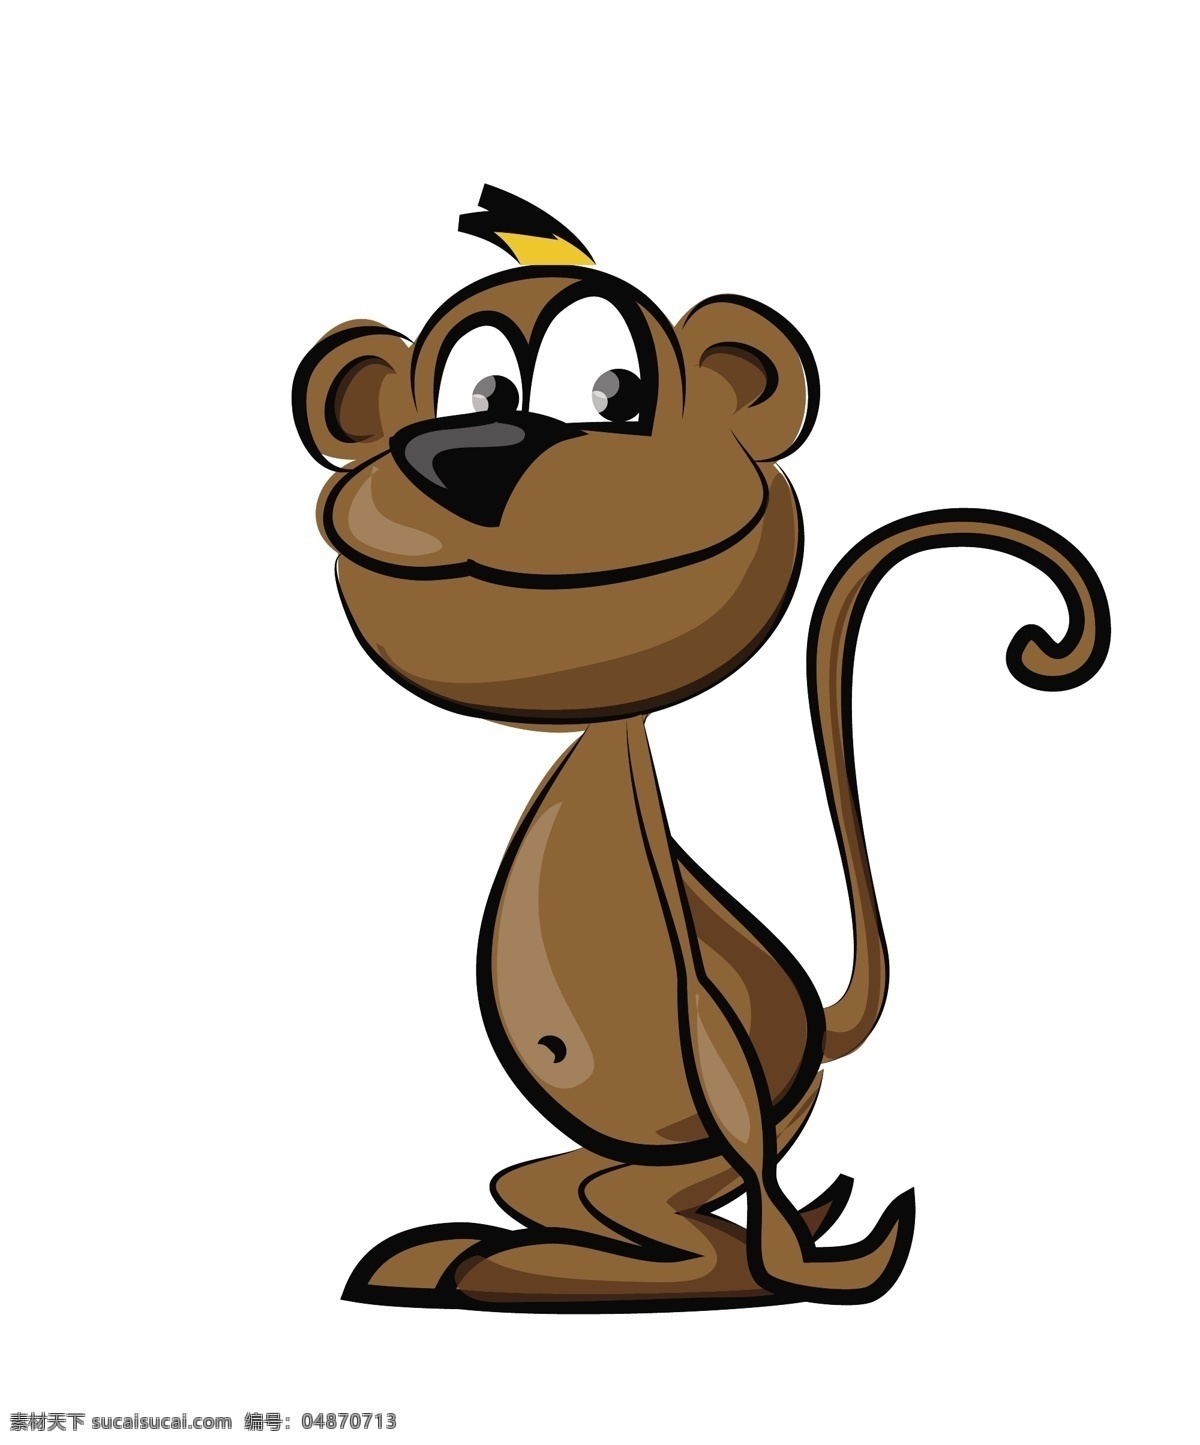 矢量 卡通 野生 猴子 动物 插画 卡通动物漫画 卡通形象 矢量人物 矢量素材 矢量动物